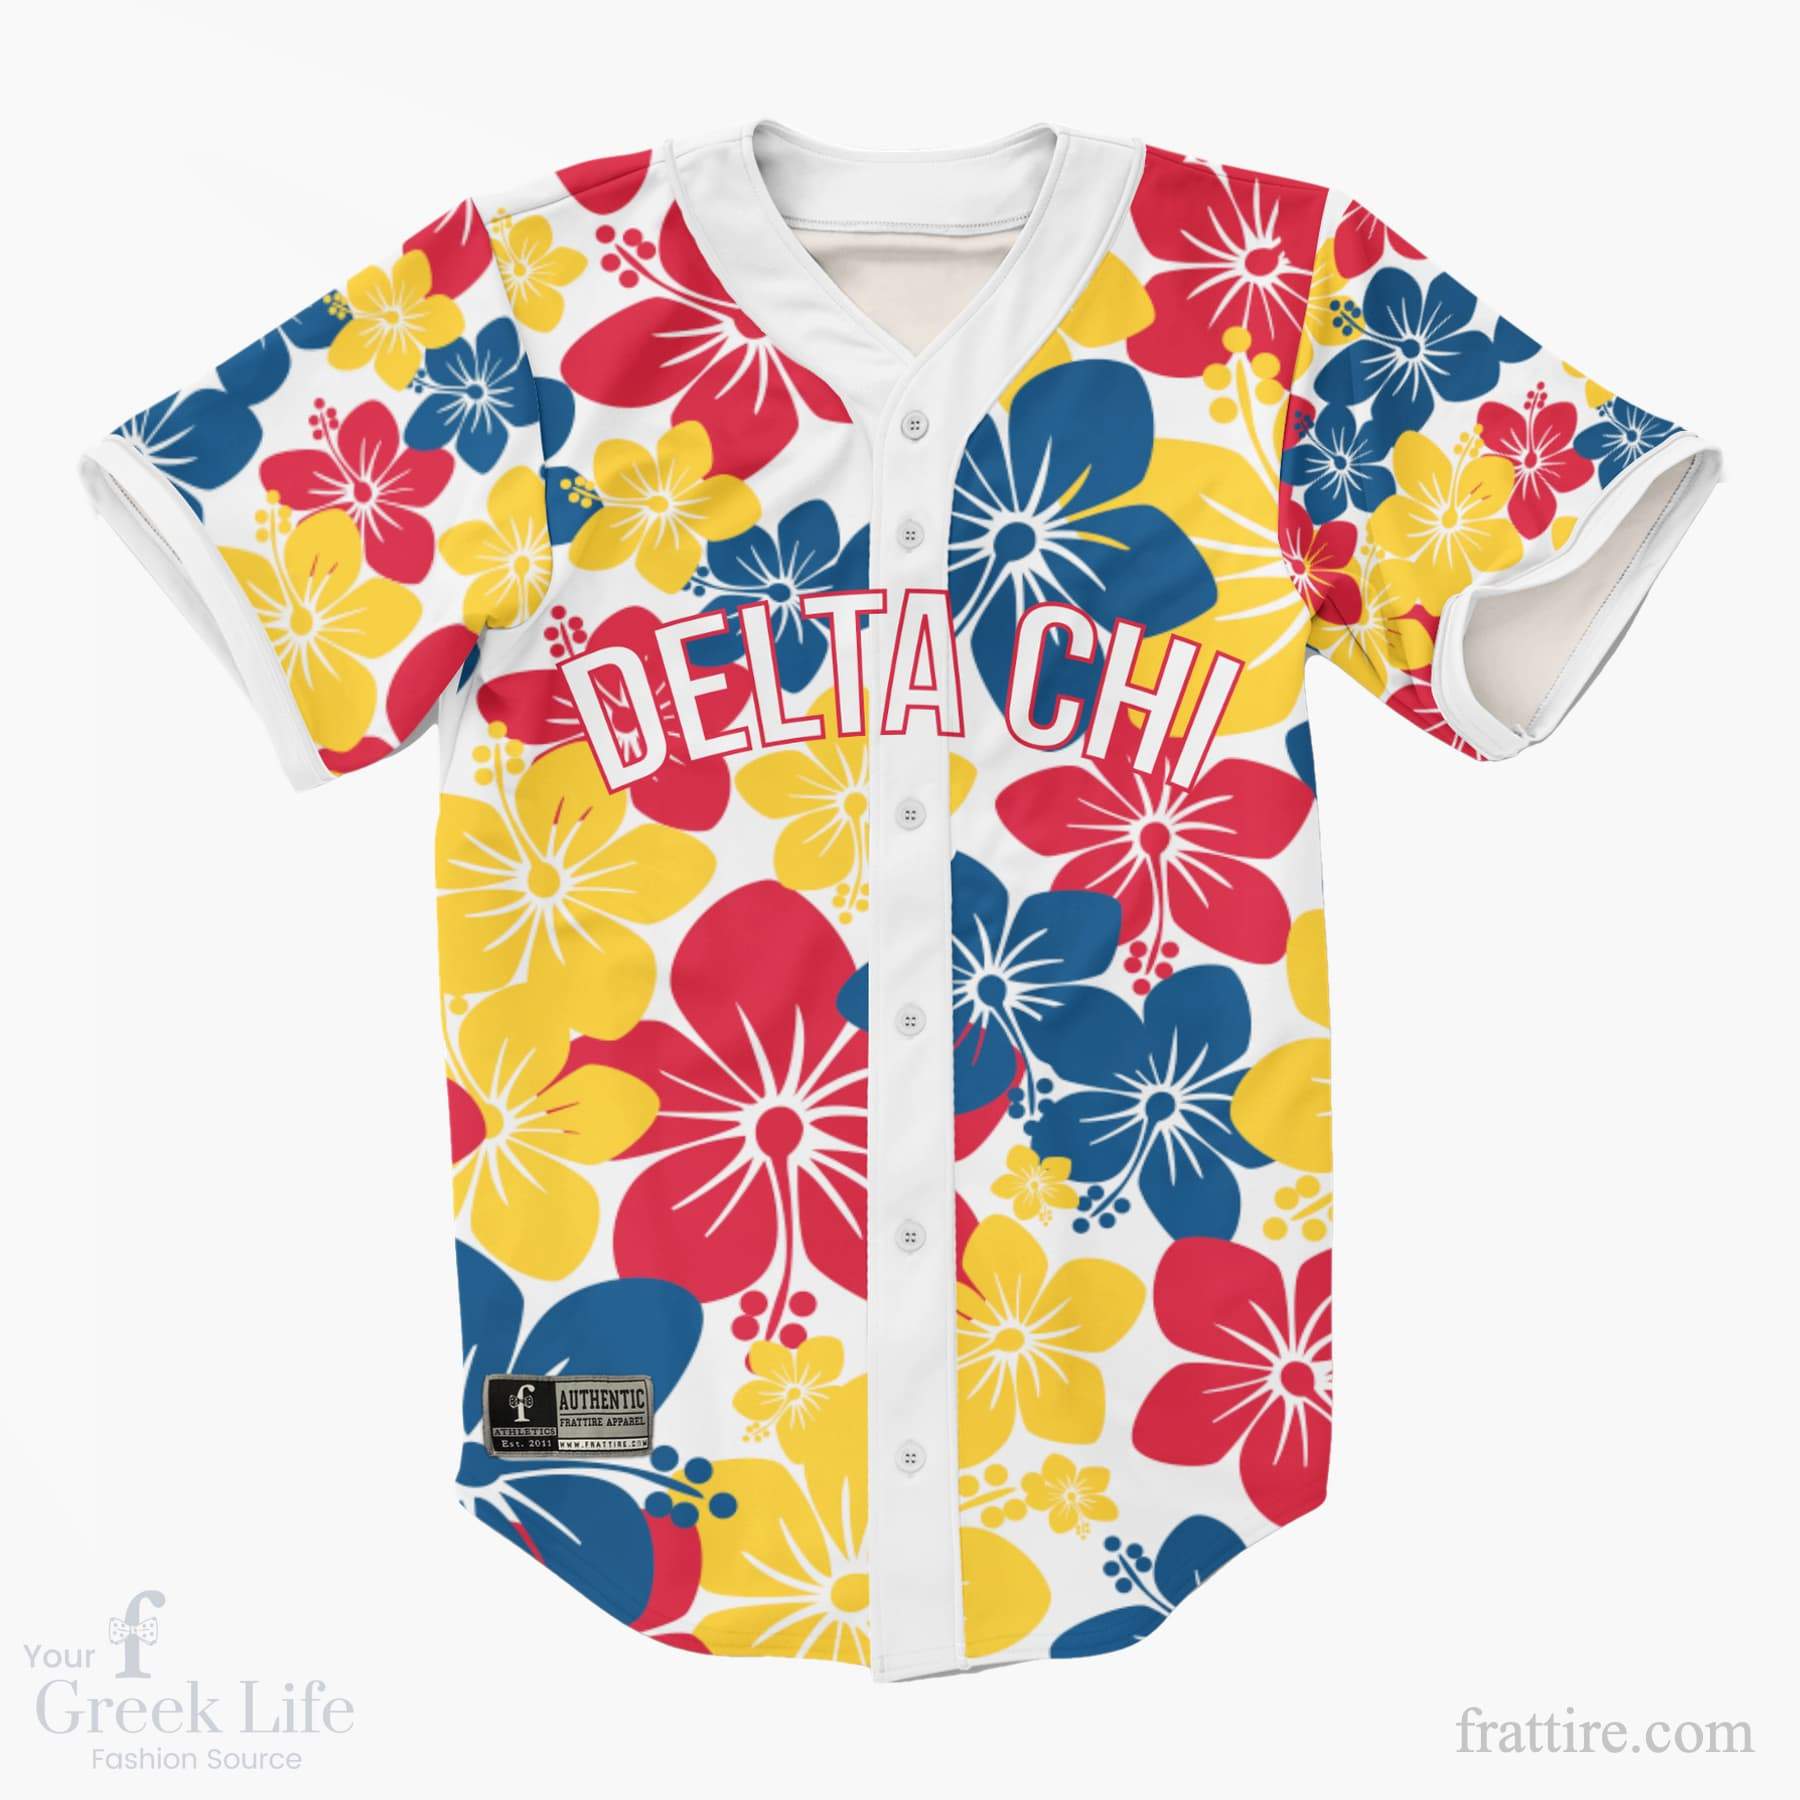 Comice Custom Baseball City Jerseys Baseball Jersey Designed & Sold By  Tendai Chitagu